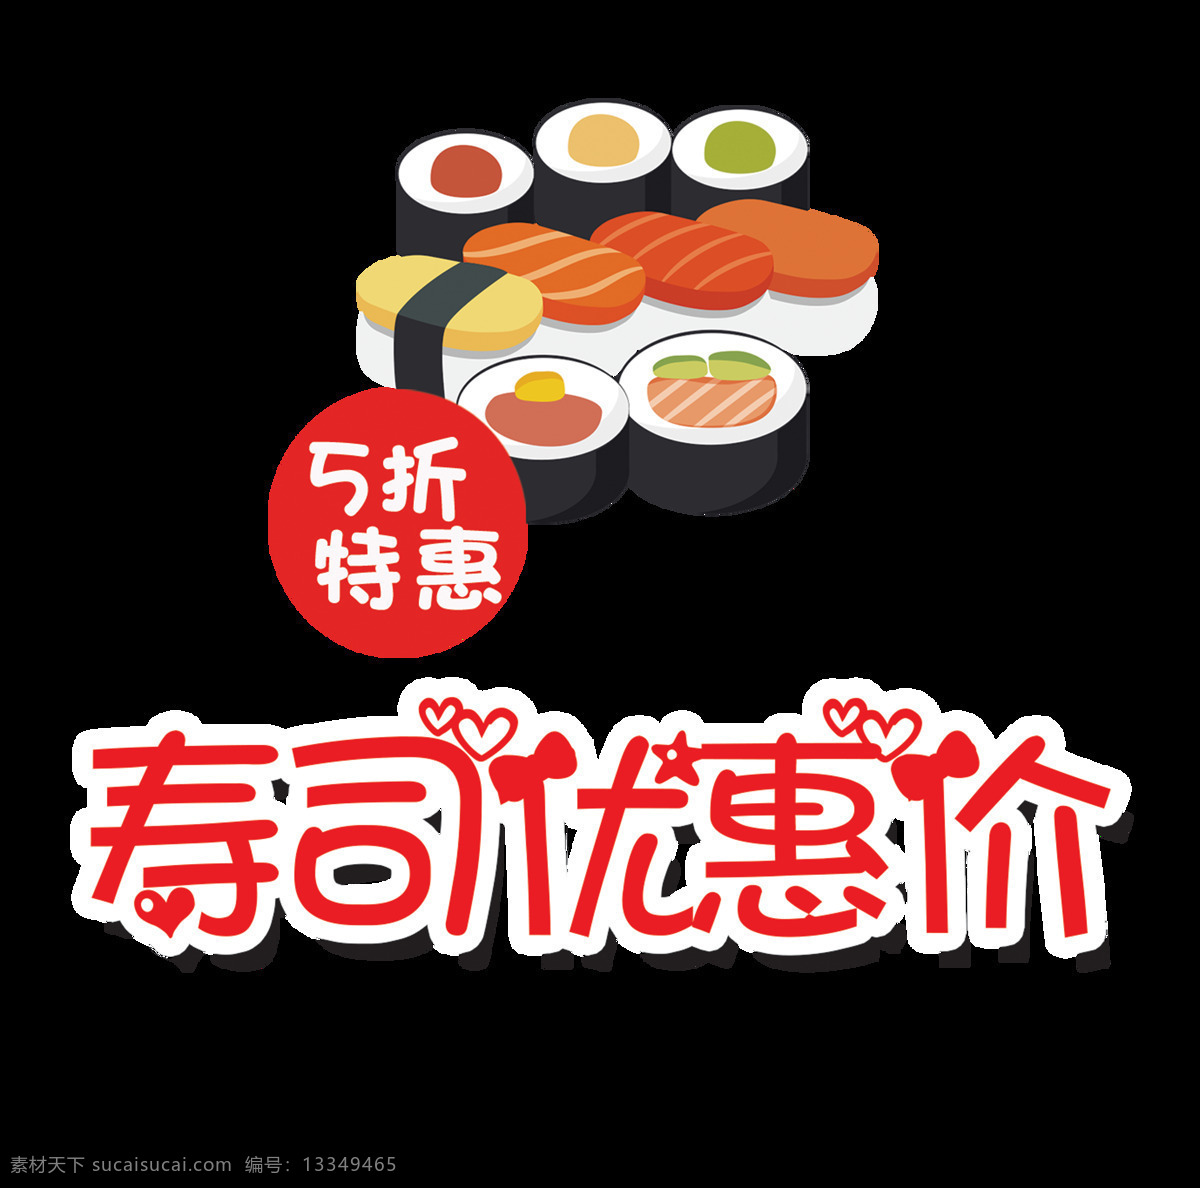 寿司 特惠价 艺术 字 字体 打折 广告 寿司特惠价 活动 海报 艺术字